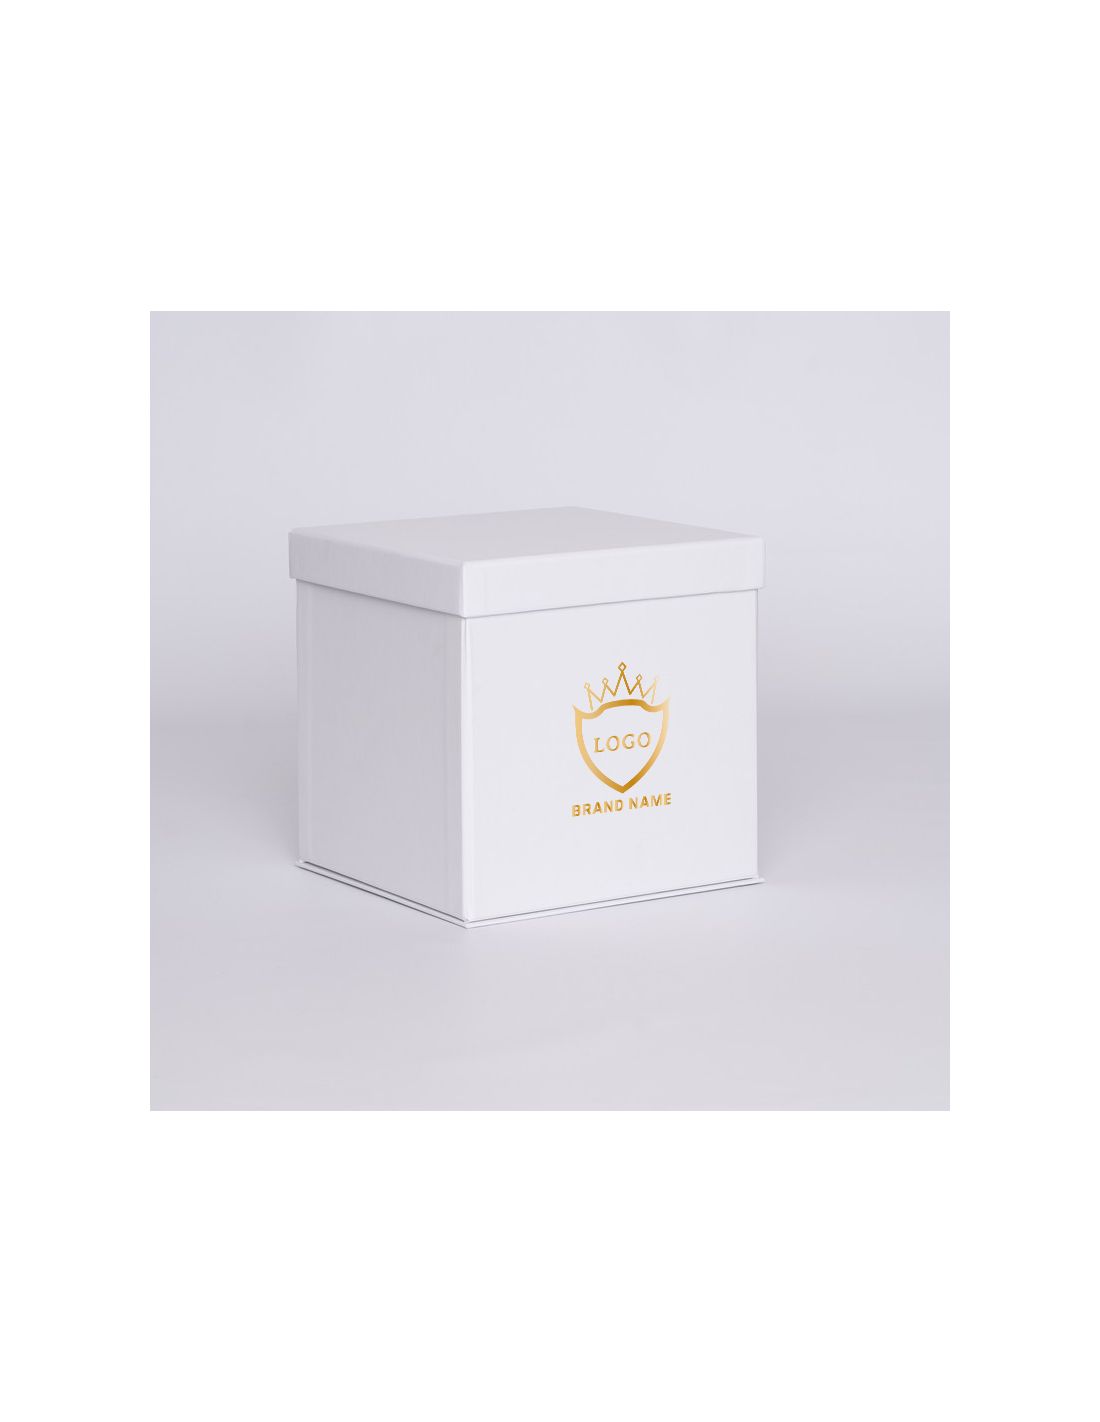 Customized Personalized foldable box Flowerbox 25x25x25 CM | FLOWERBOX |HEISSDRUCK